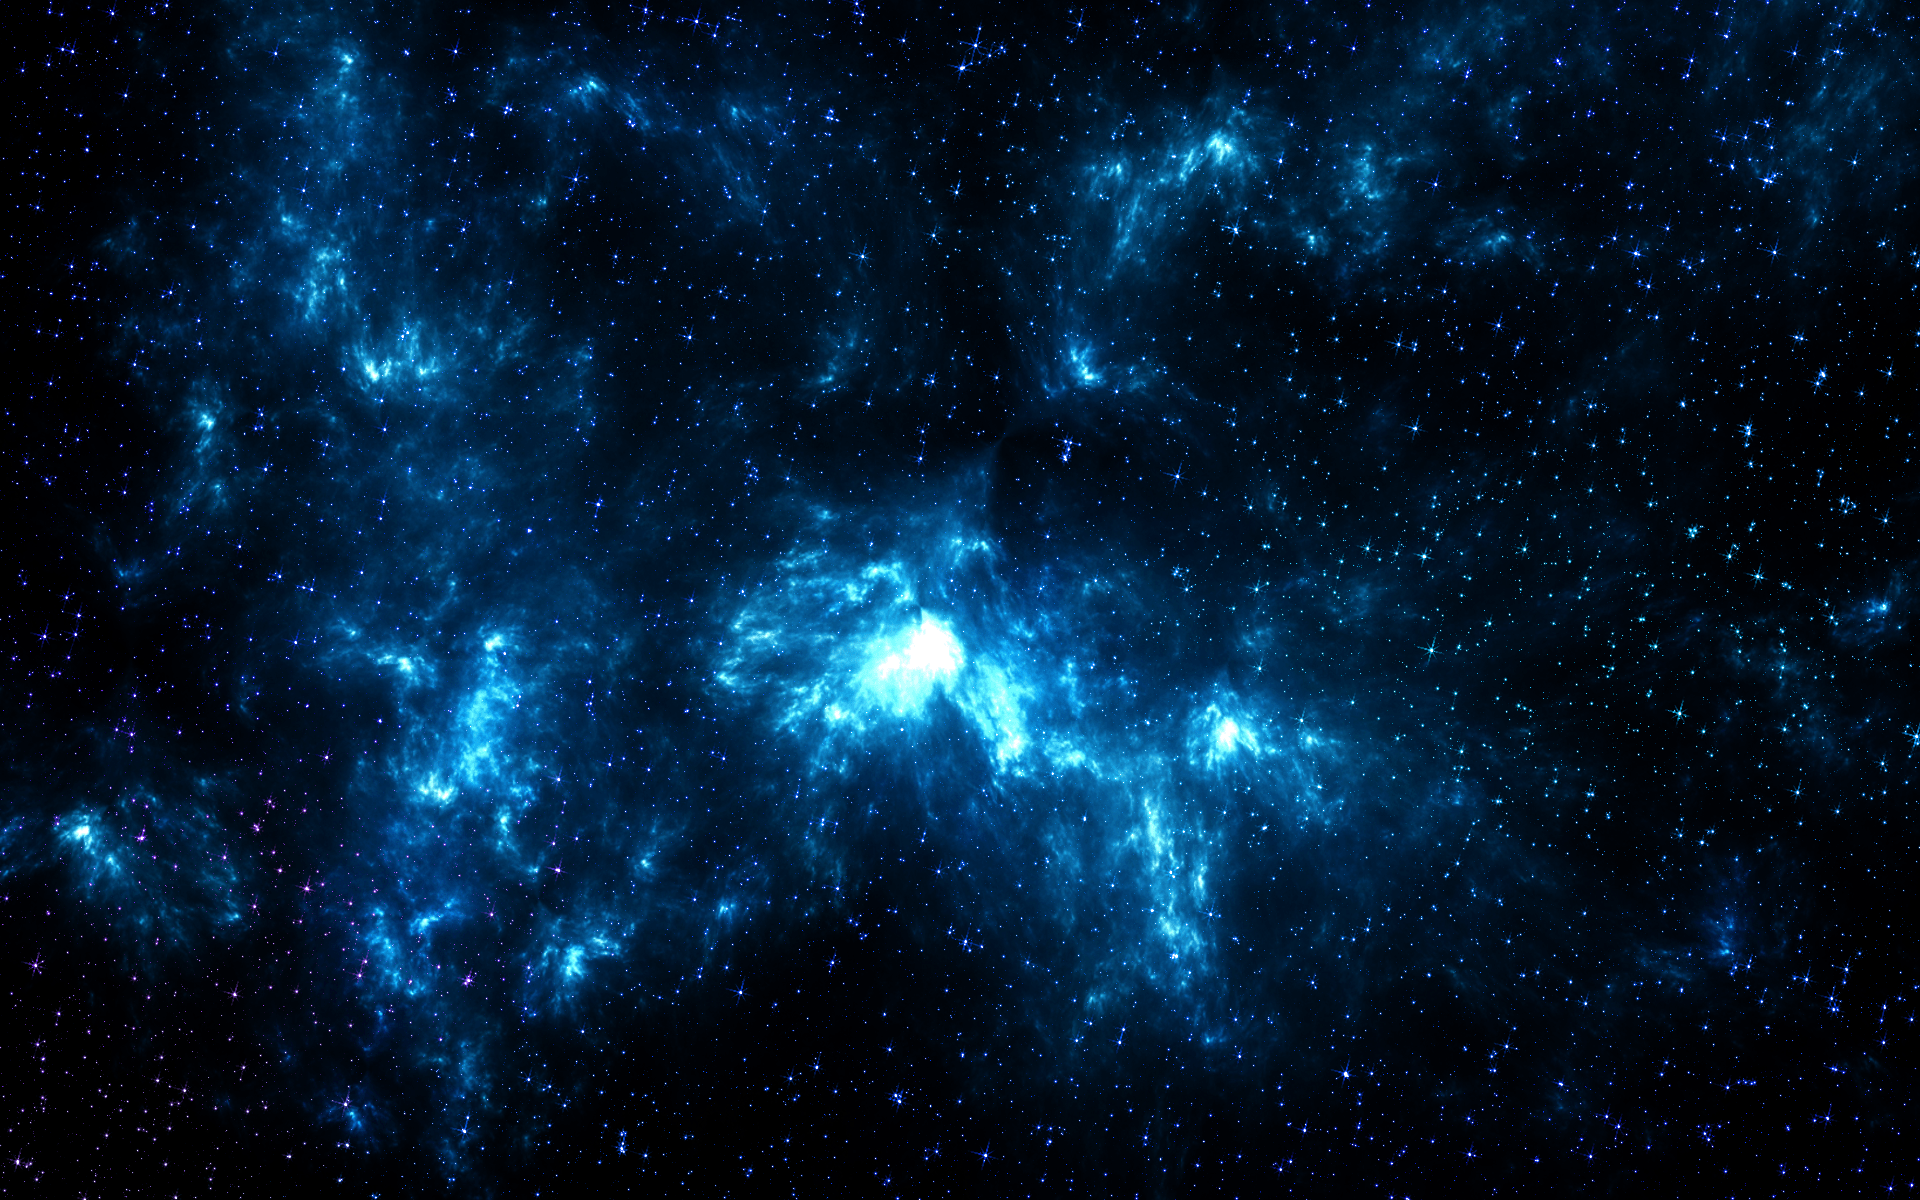 Hãy chiêm ngưỡng bức ảnh thiên nhiên vô cùng độc đáo với nền trời xanh như vũ trụ. Hãy cảm nhận tinh túy của không gian và đắm chìm trong sự tuyệt vời của màu xanh.